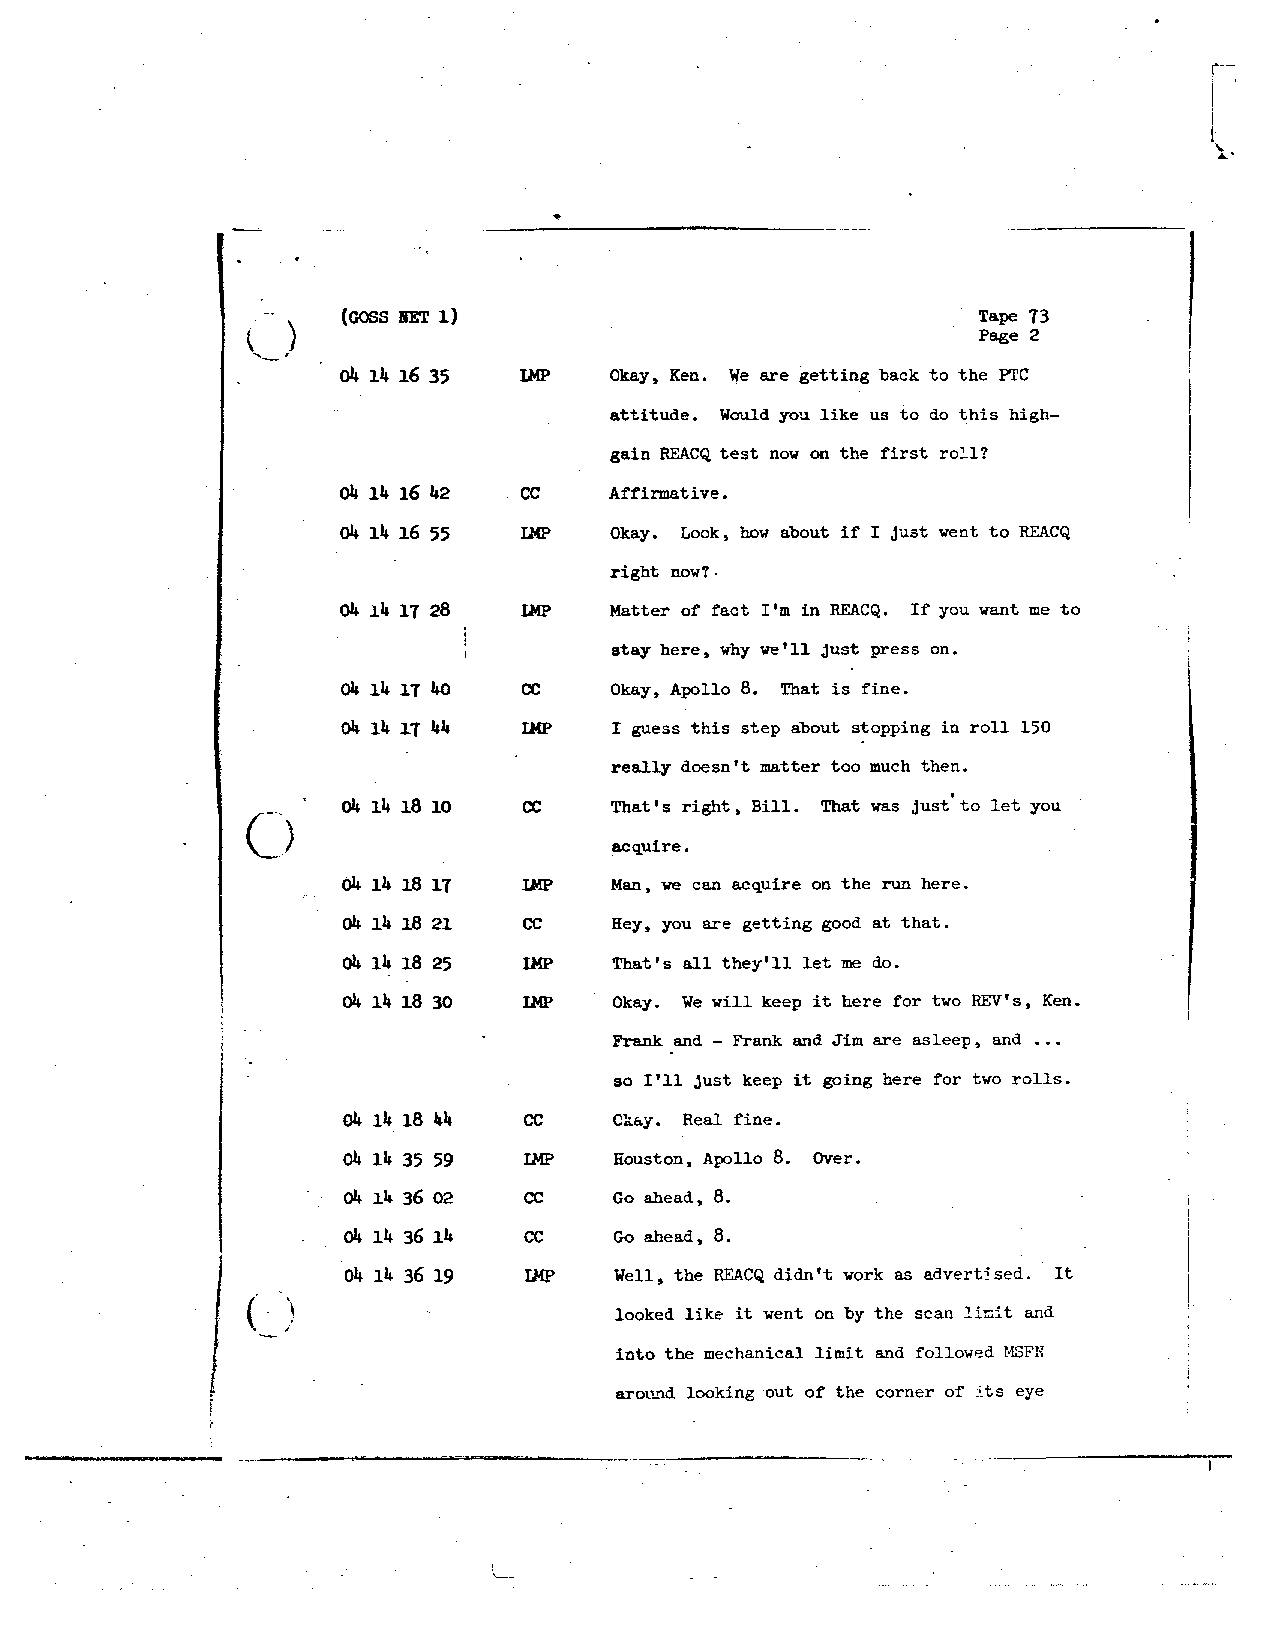 Page 588 of Apollo 8’s original transcript